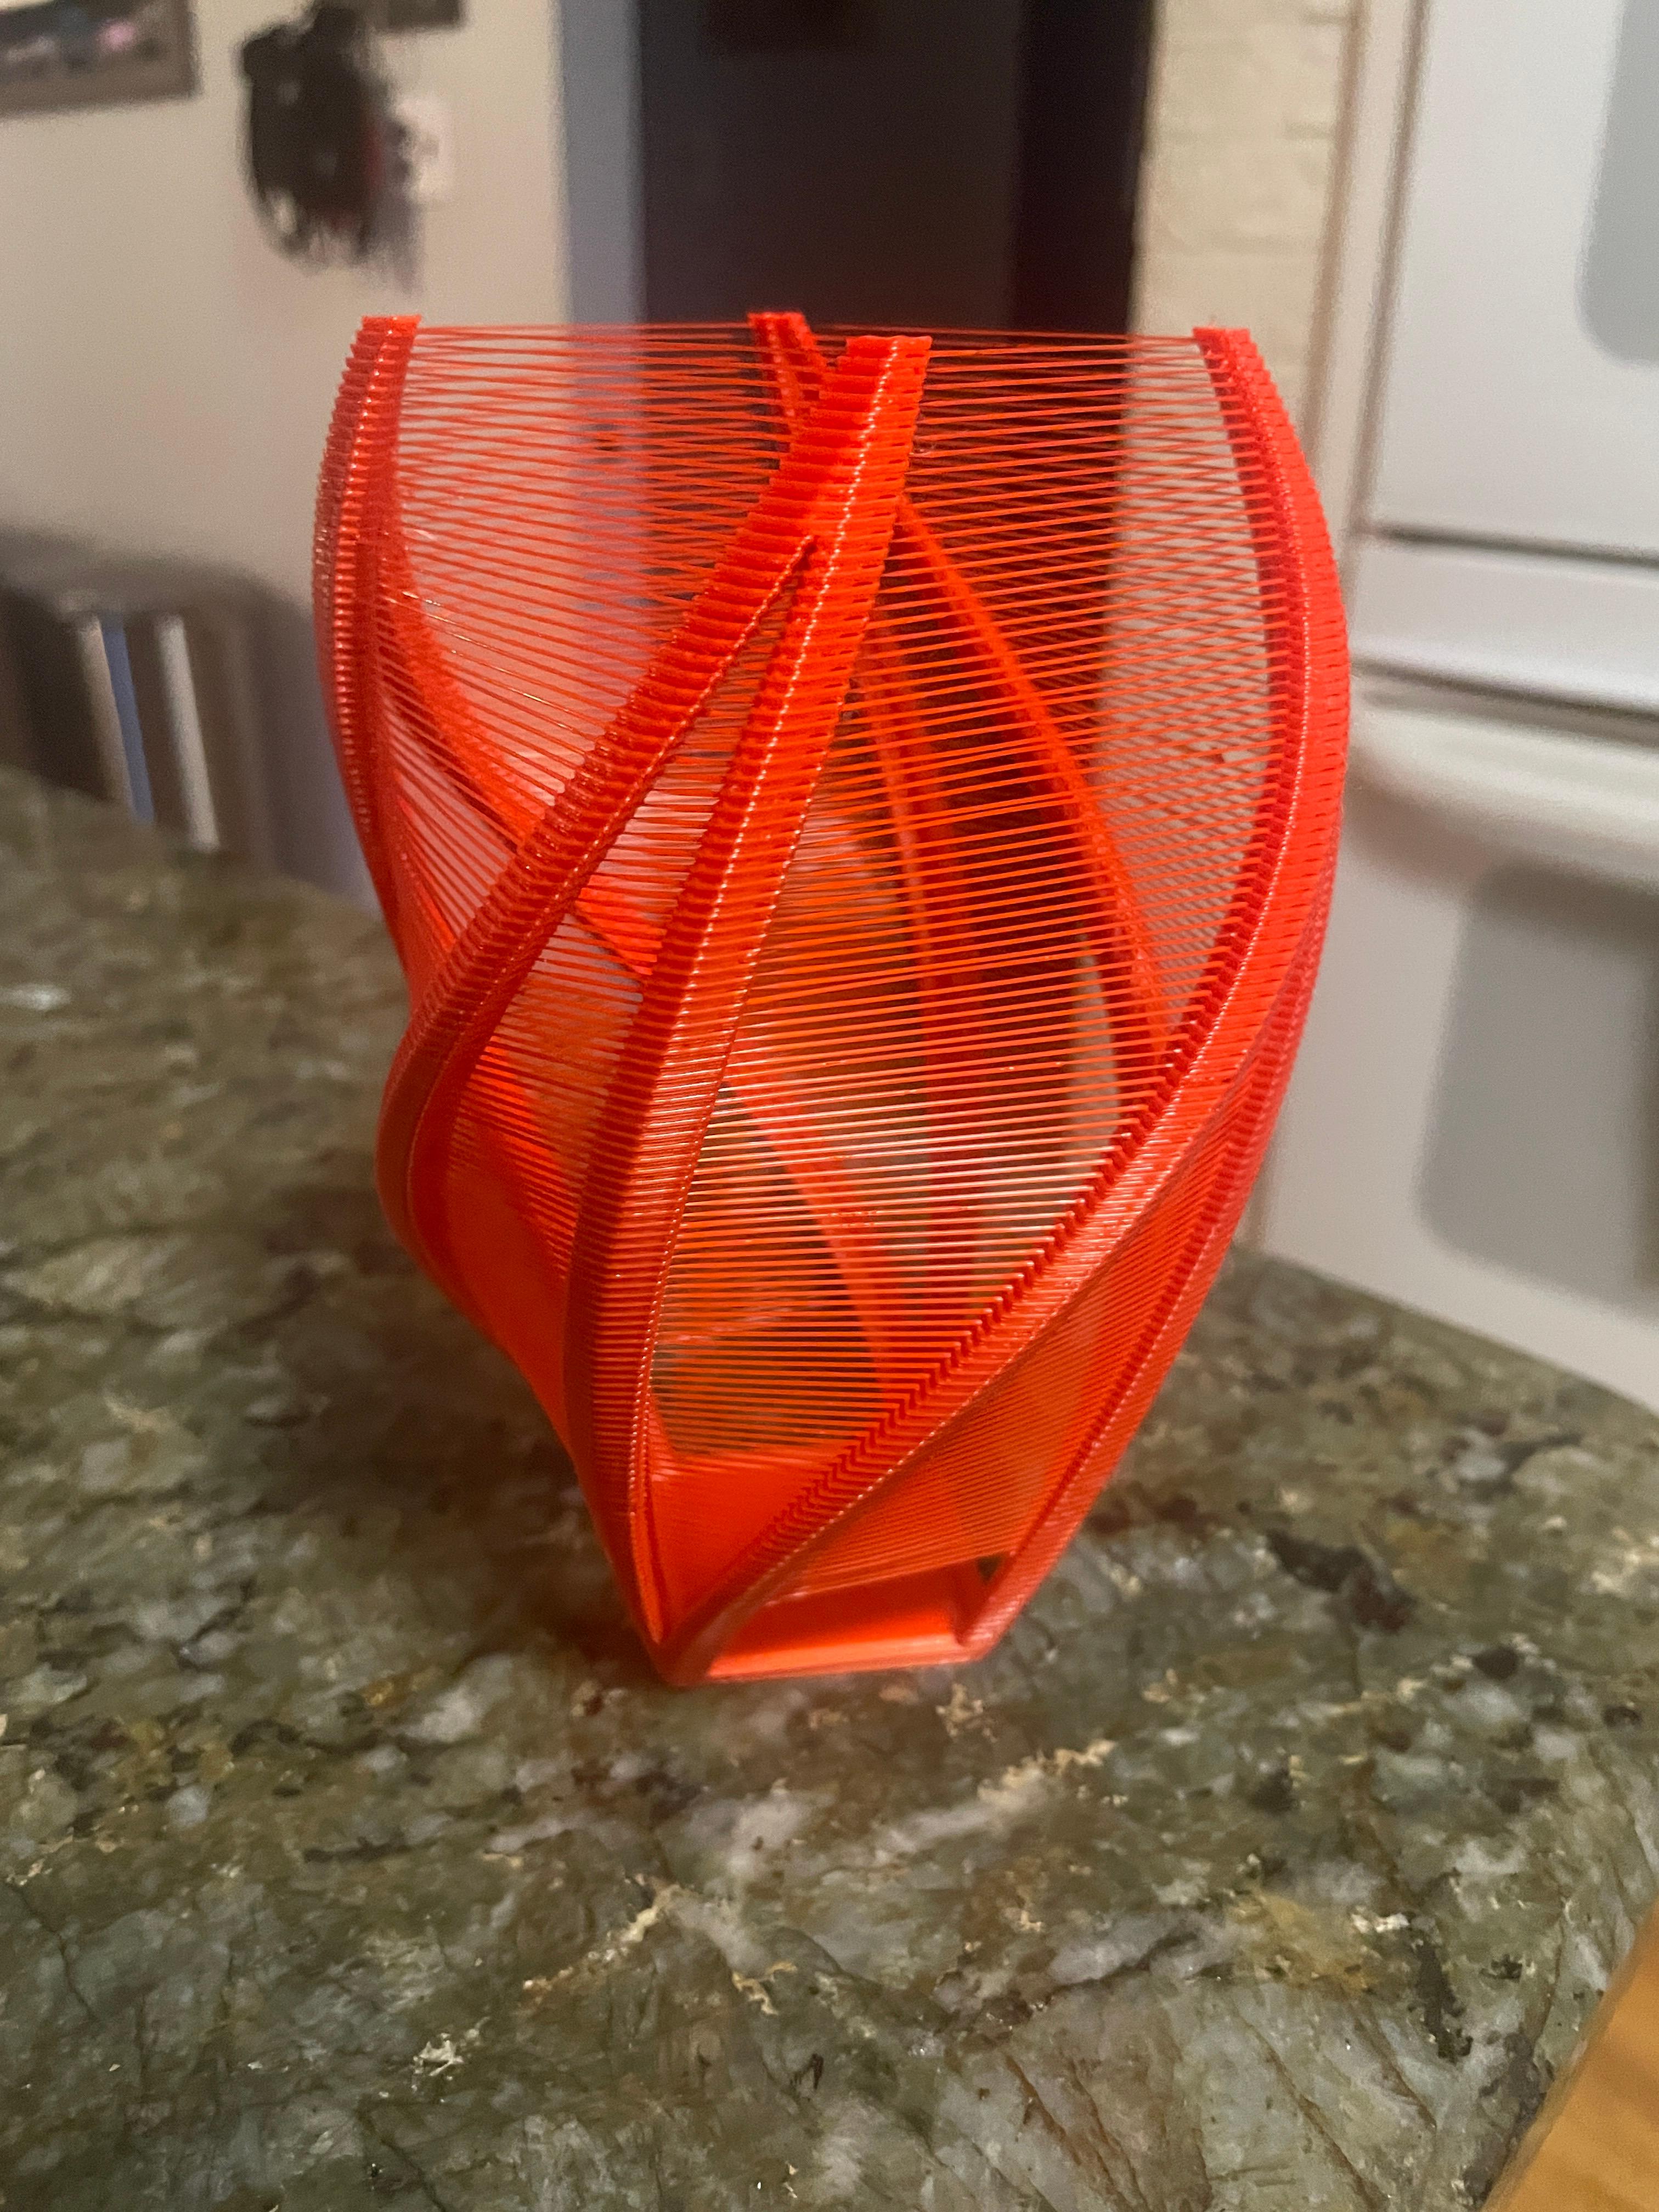 Twisty String Vase - Very cool design  - 3d model